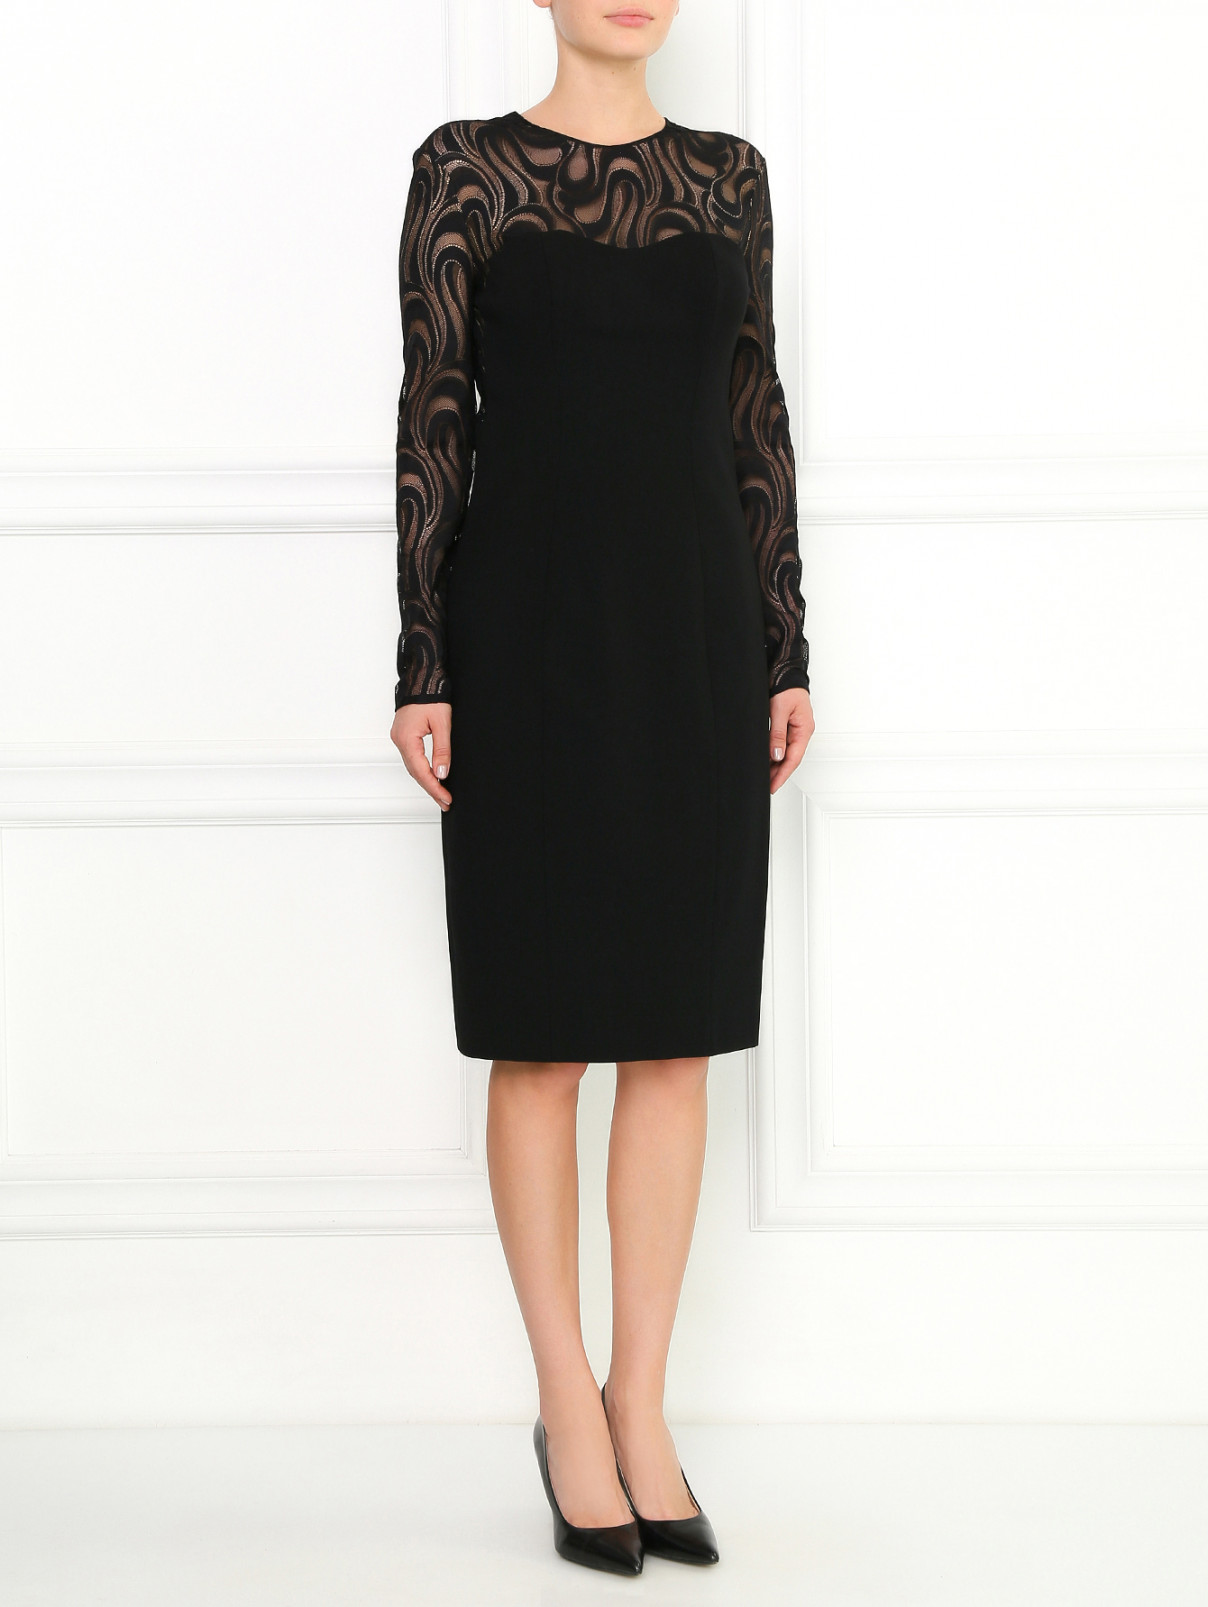 Платье-футляр с вставкой из кружева Carolina Herrera  –  Модель Общий вид  – Цвет:  Черный